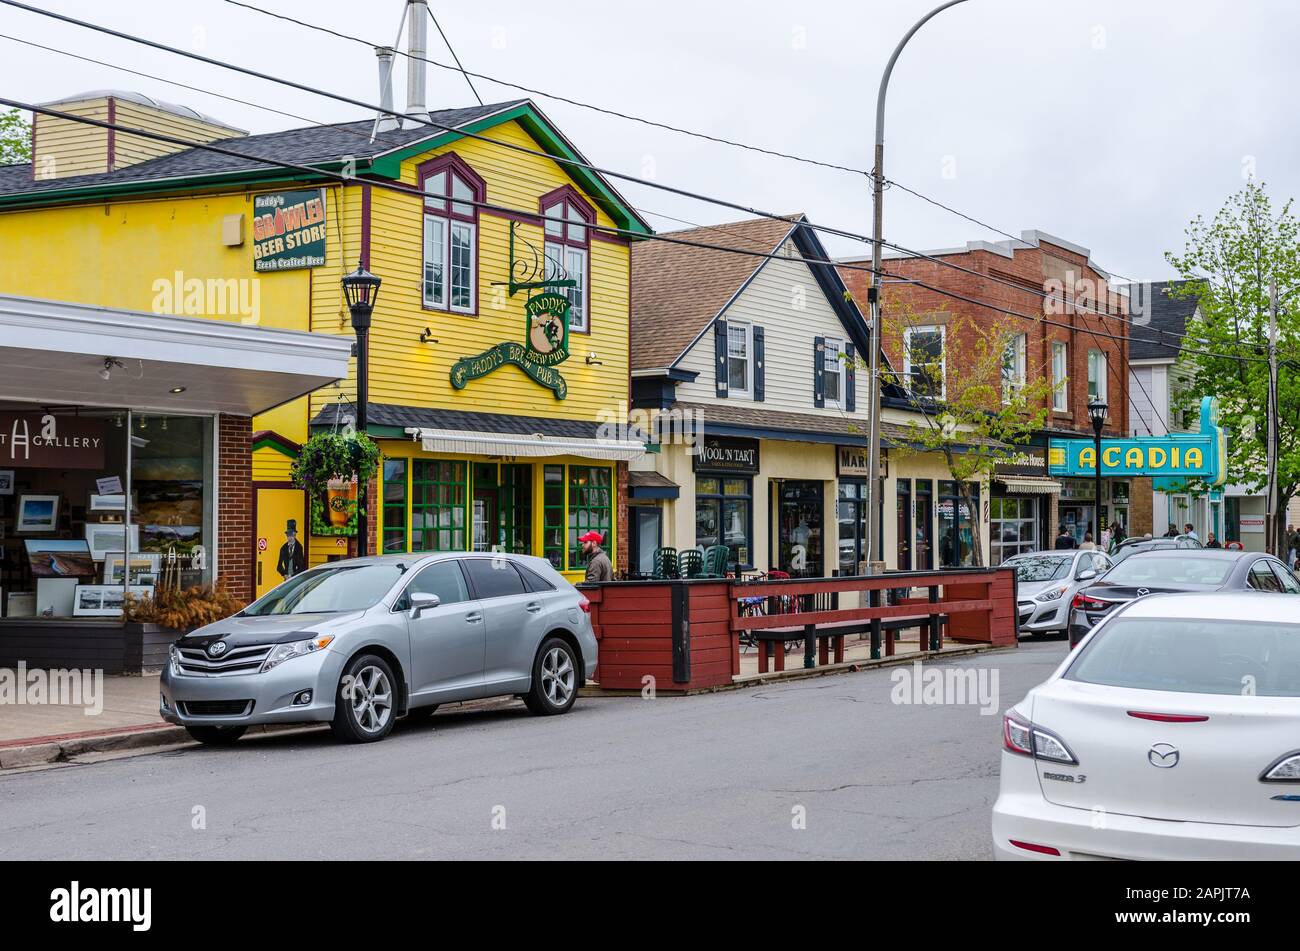 Paddy's Brew Pub in Wolfville, Nova Scotia, Canada Stock Photo